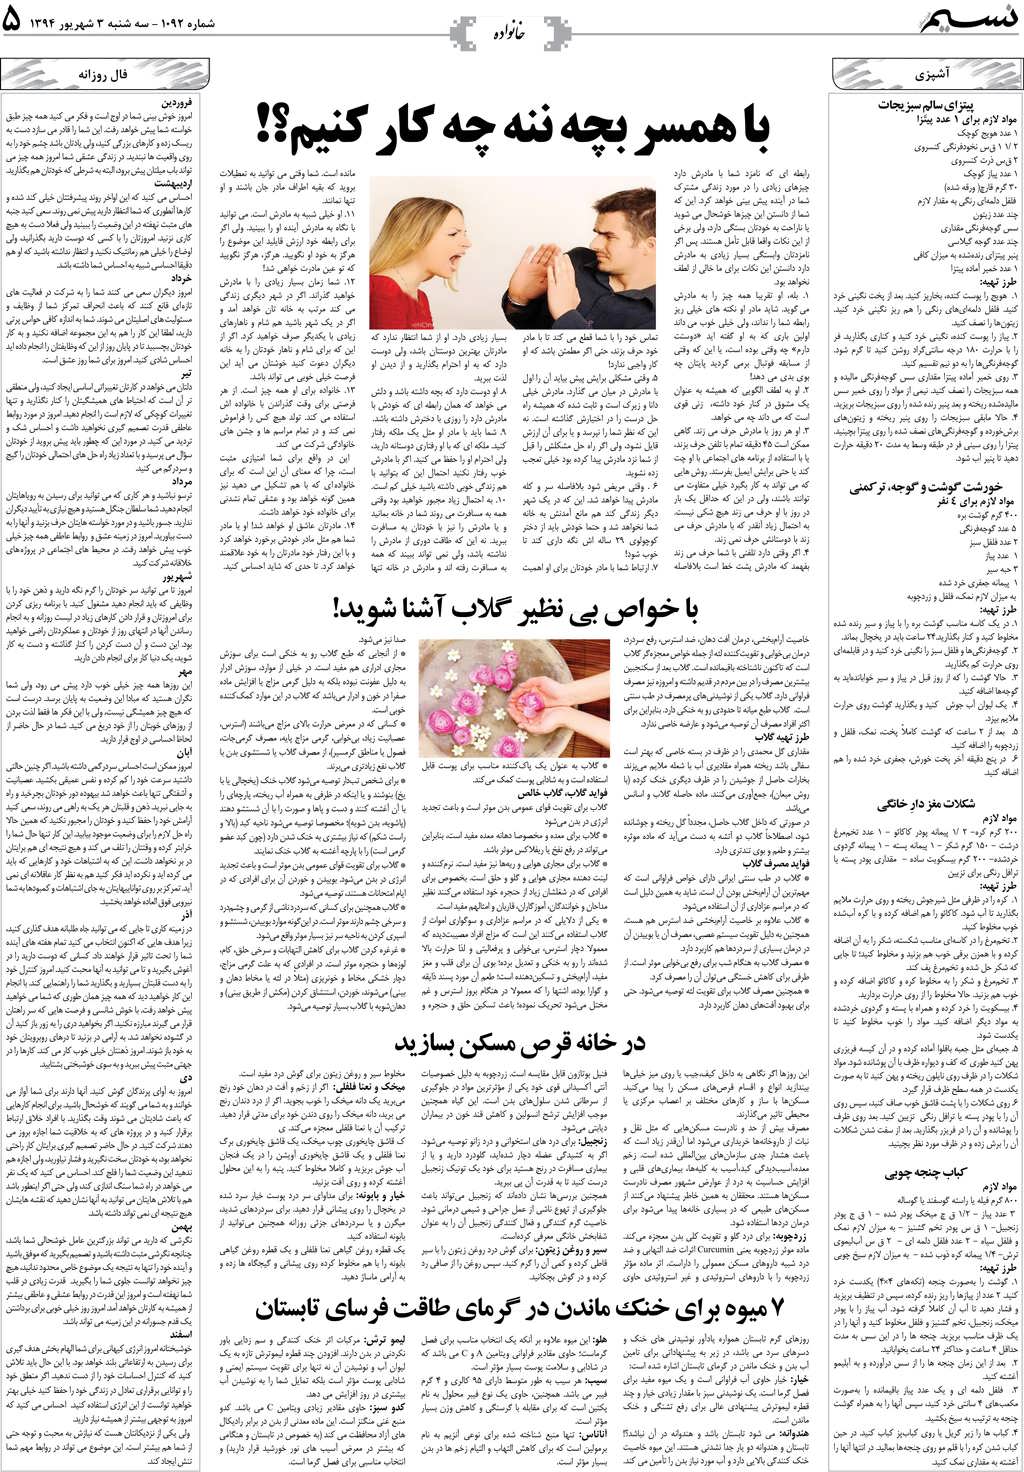 صفحه خانواده روزنامه نسیم شماره 1092